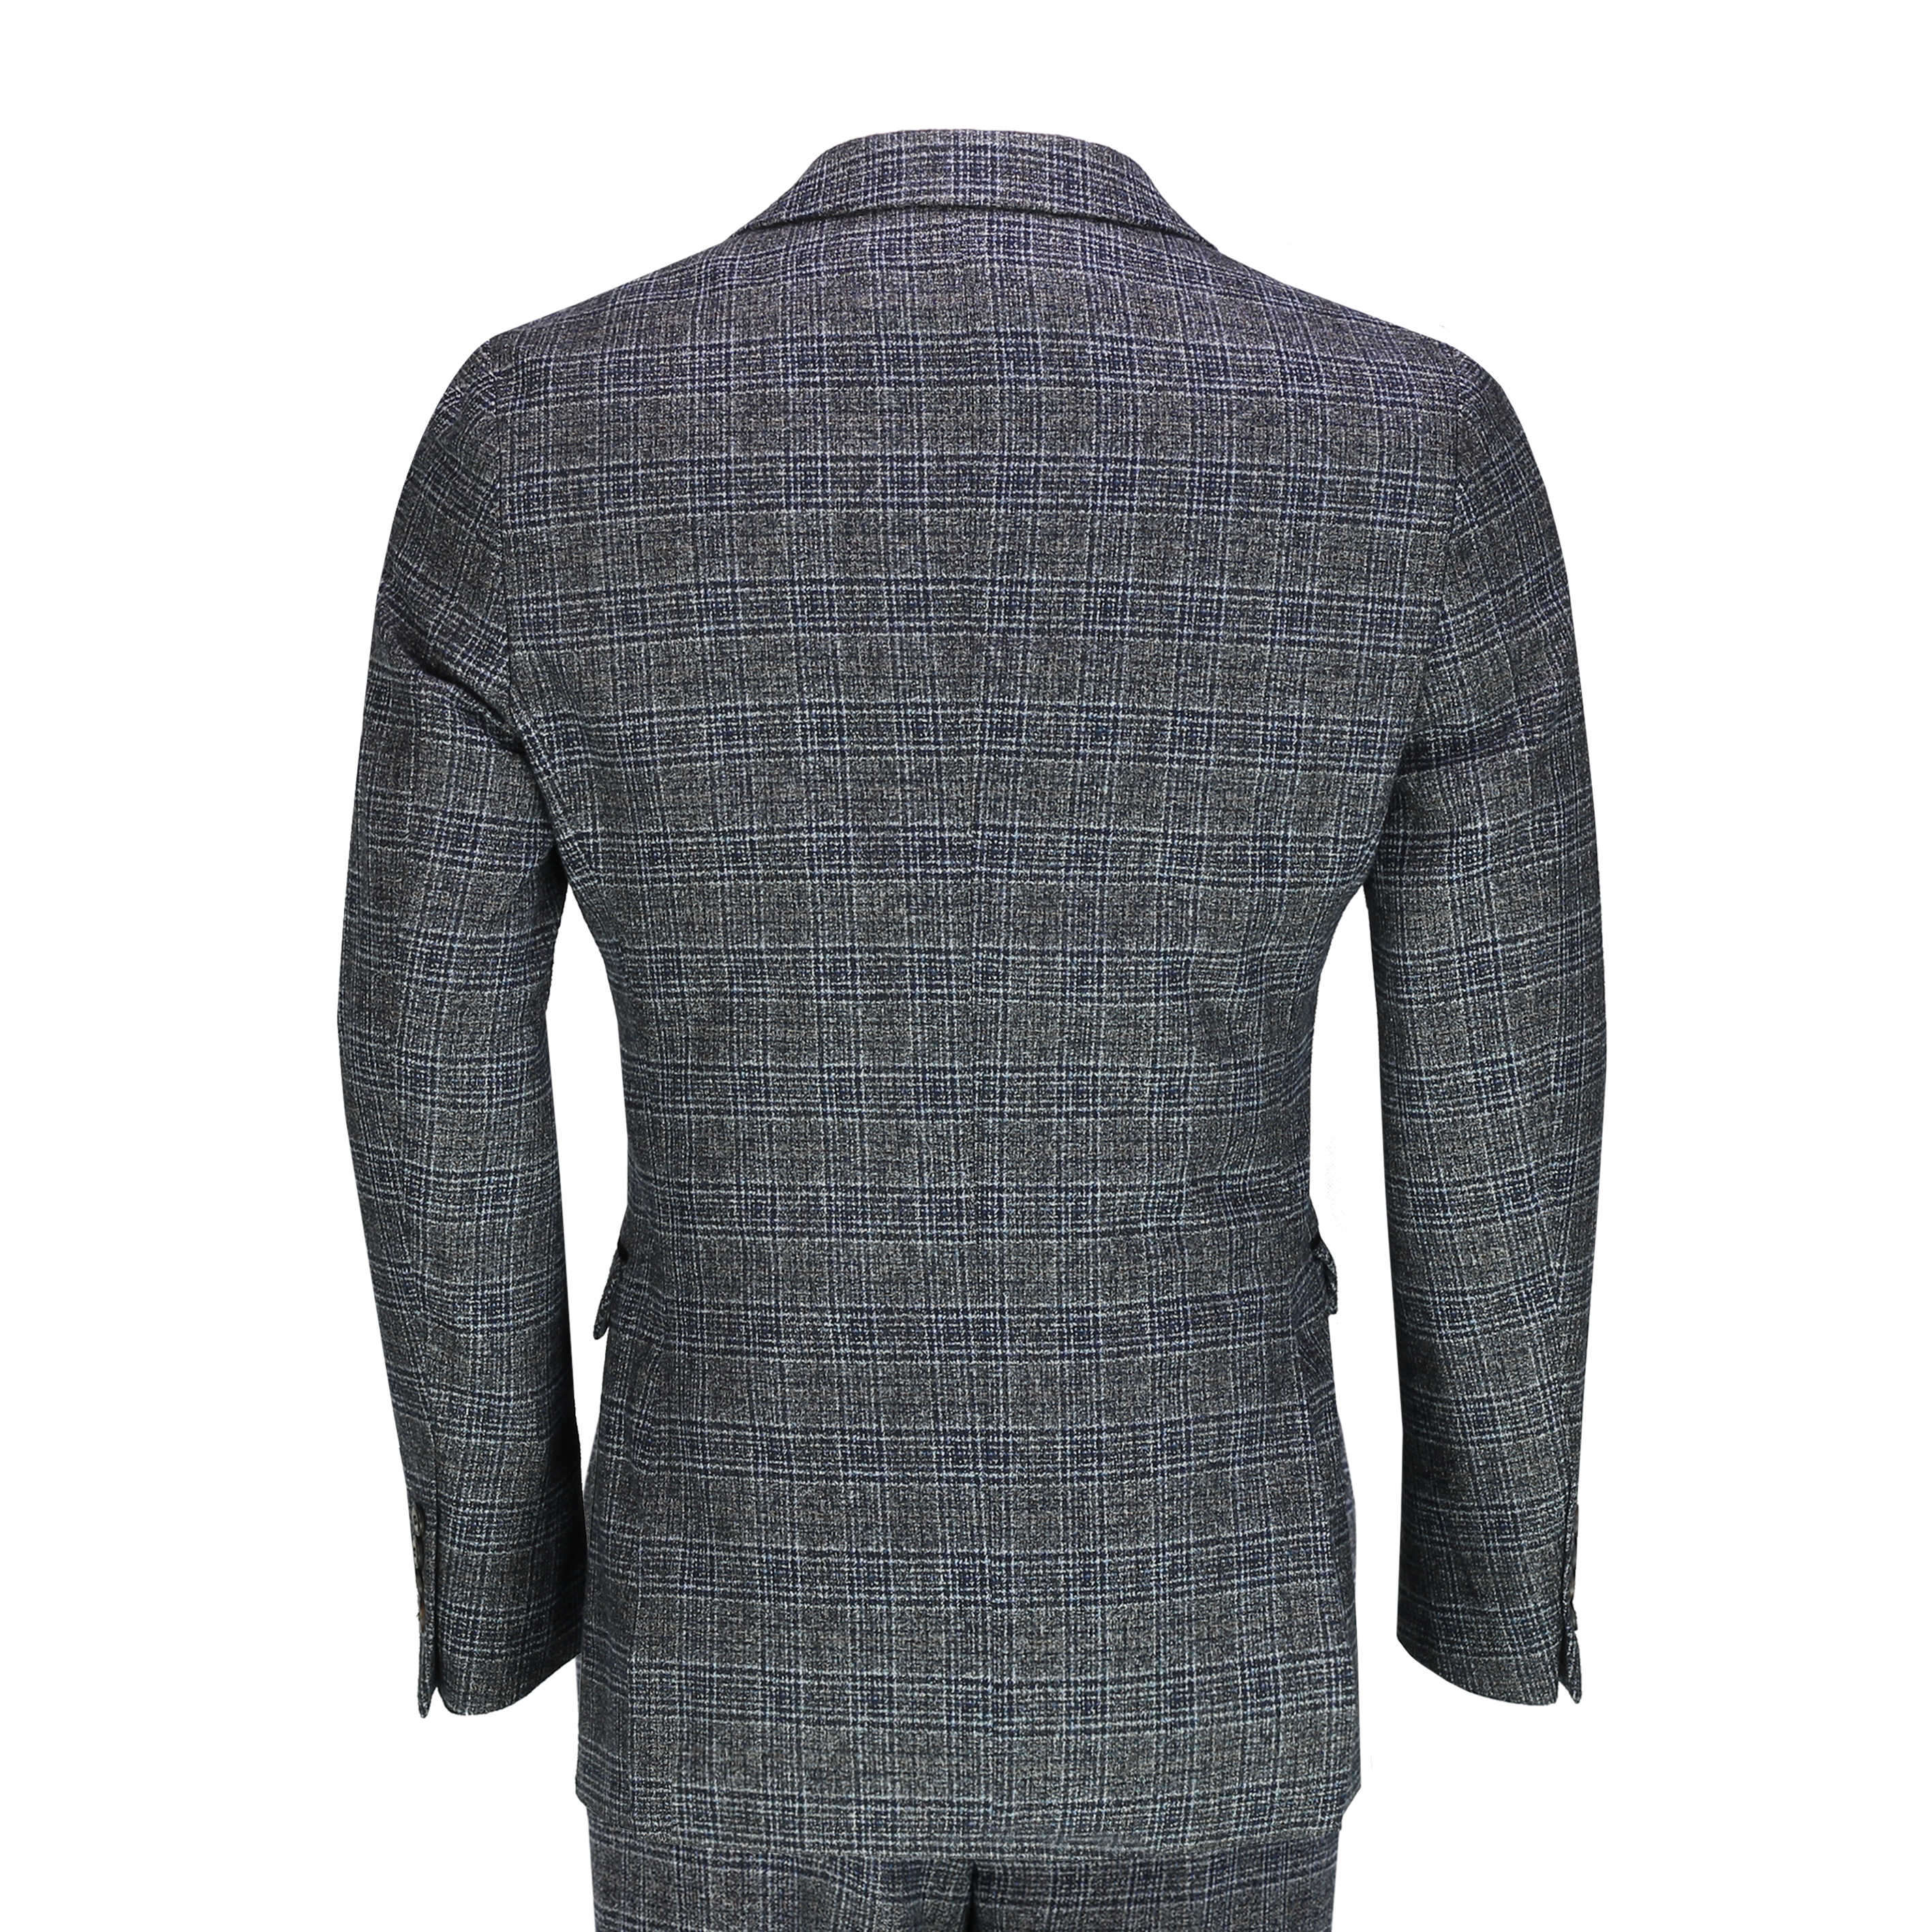 Mens Tweed Check Navy Grey 3 Piece Suit Vintage 1920s Smart Retro ...